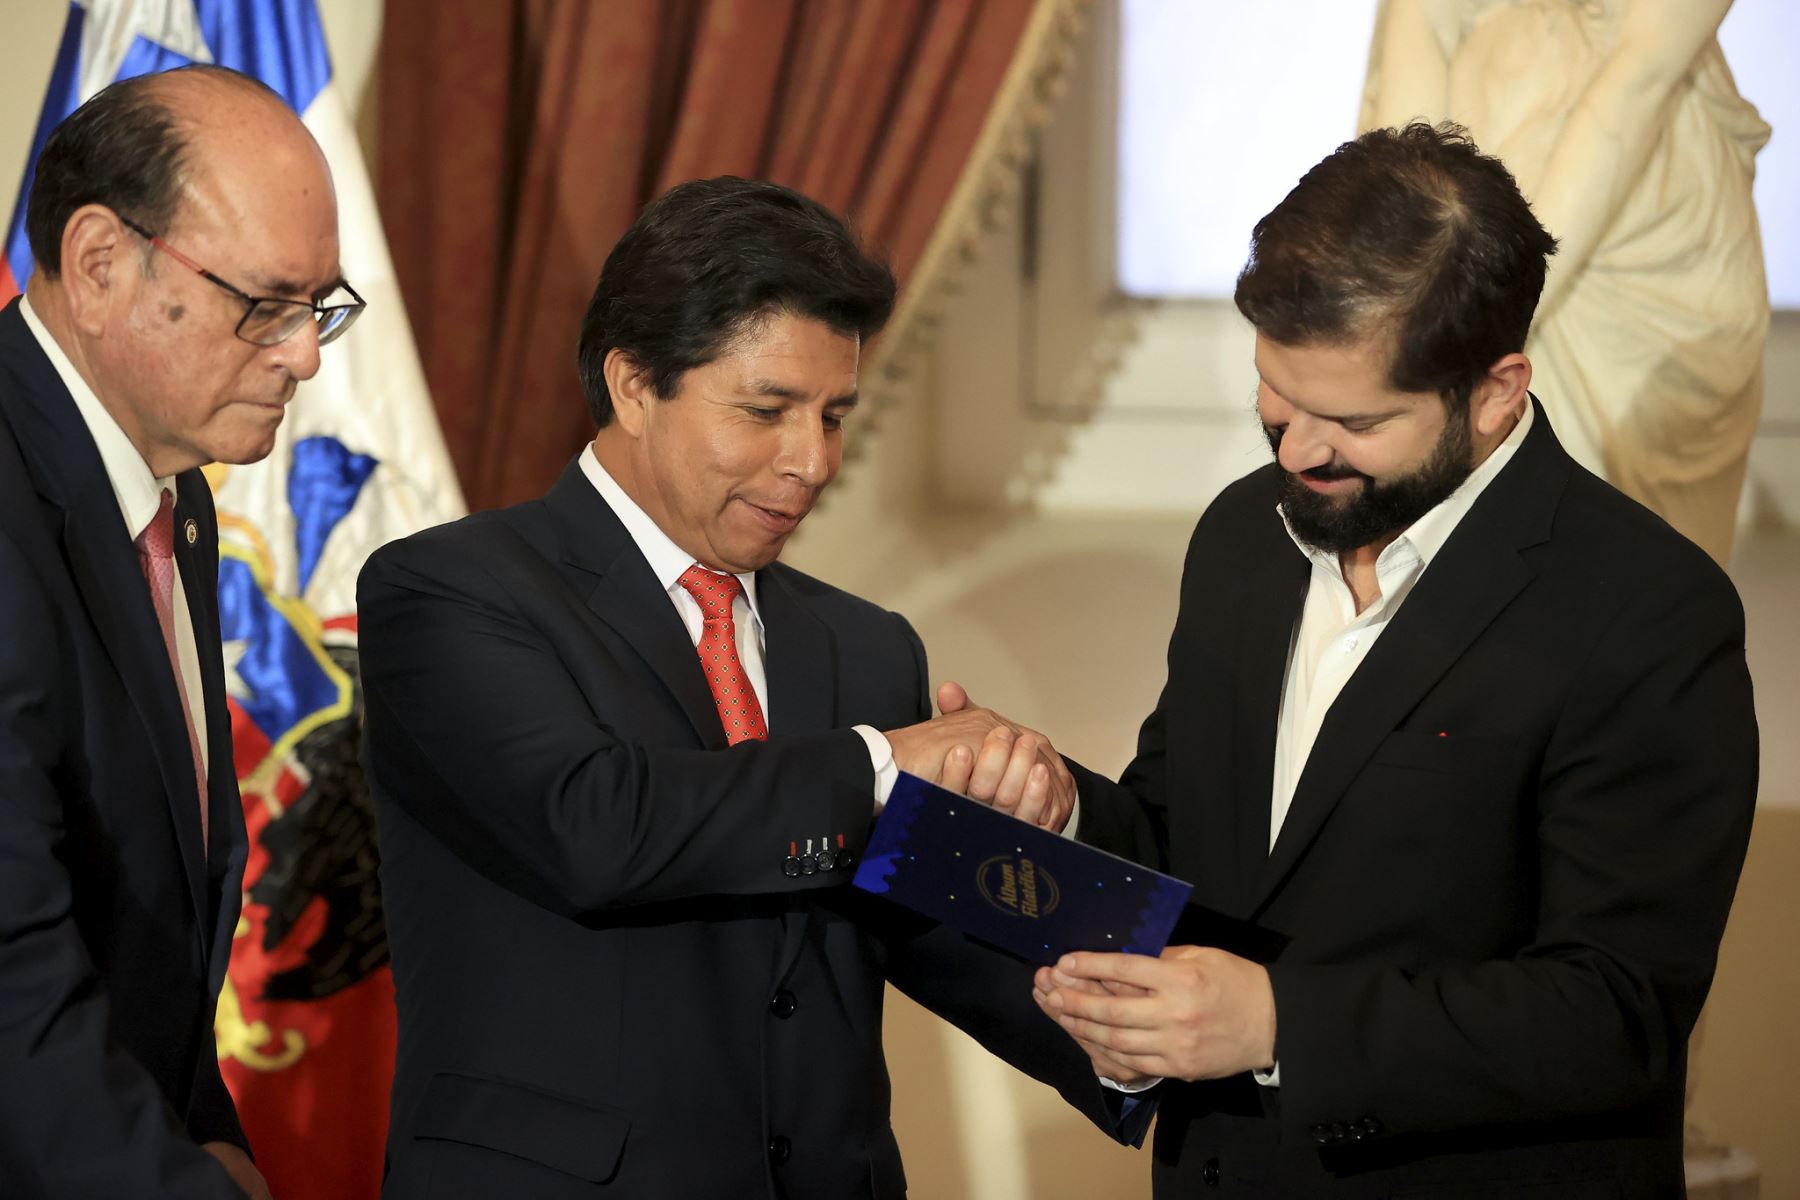 Presidente de la República, Pedro Castillo, participa en la ceremonia de presentación de matasellos en conmemoración a los 200 años de relaciones diplomáticas Perú-Chile.

Foto:ANDINA/ Presidencia